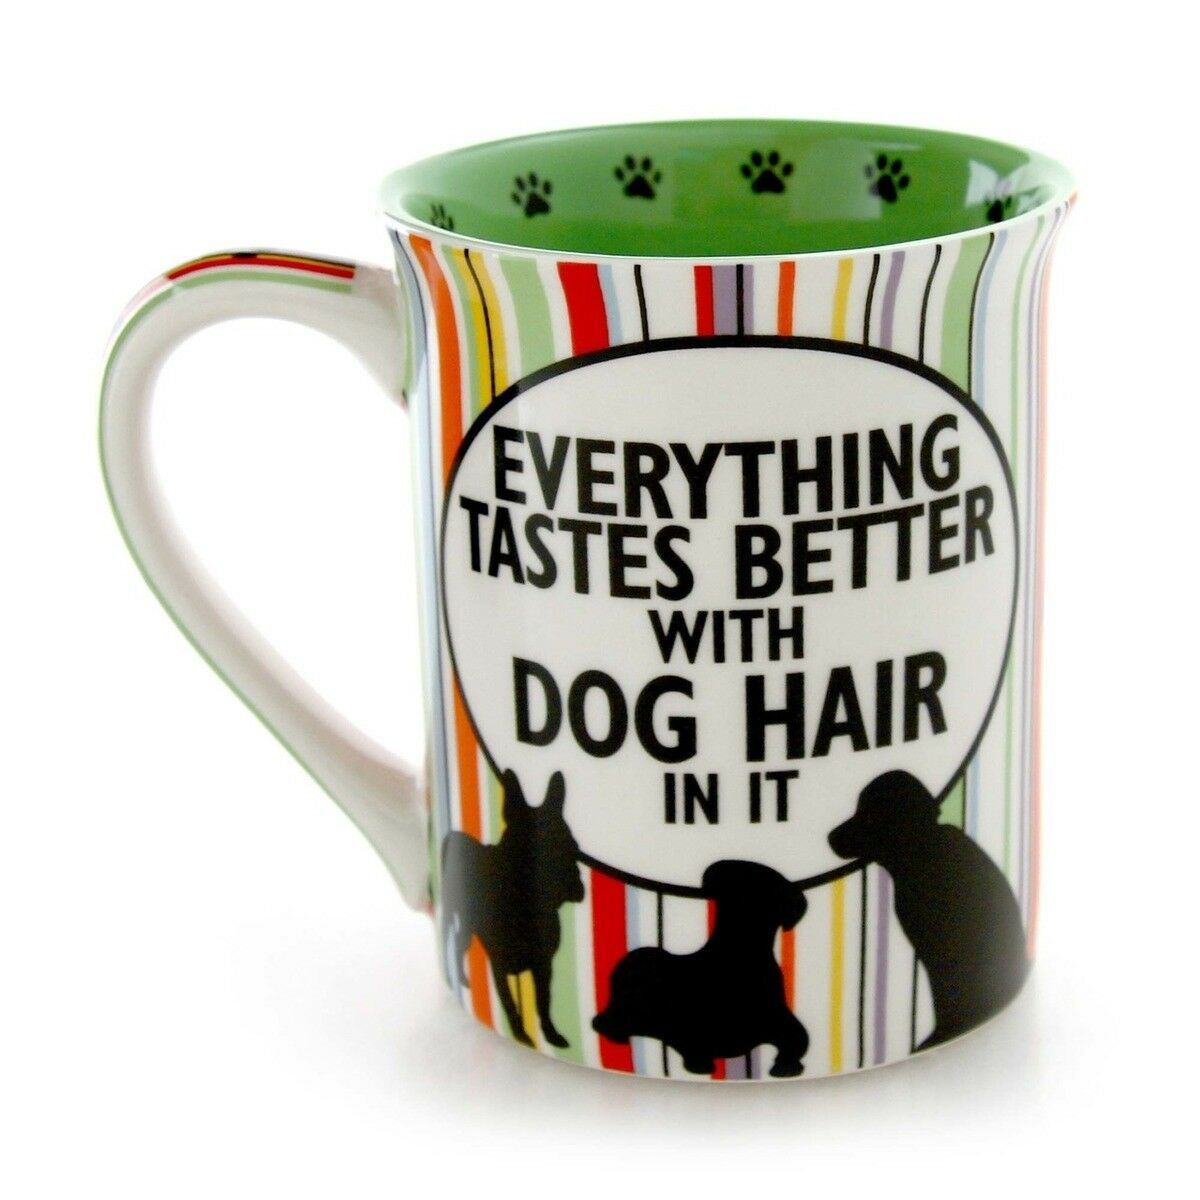 Dog Hair and Coffee Mug